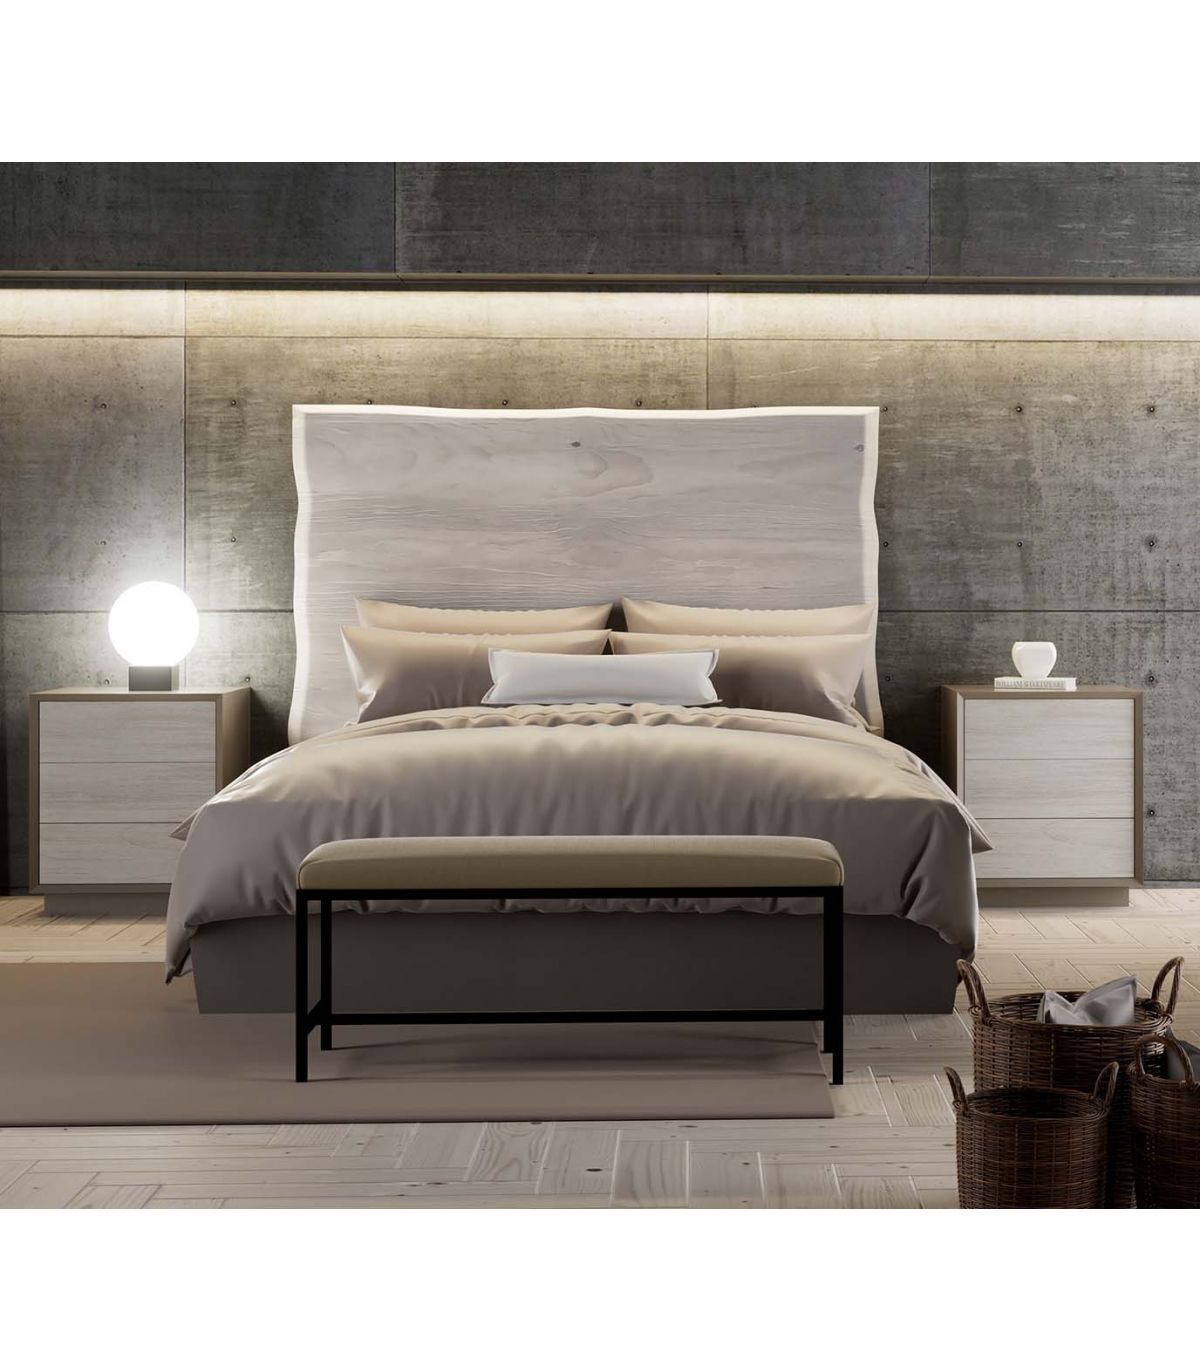 Cabecero Merapi barrotes horizontales y verticales cama 150 cm